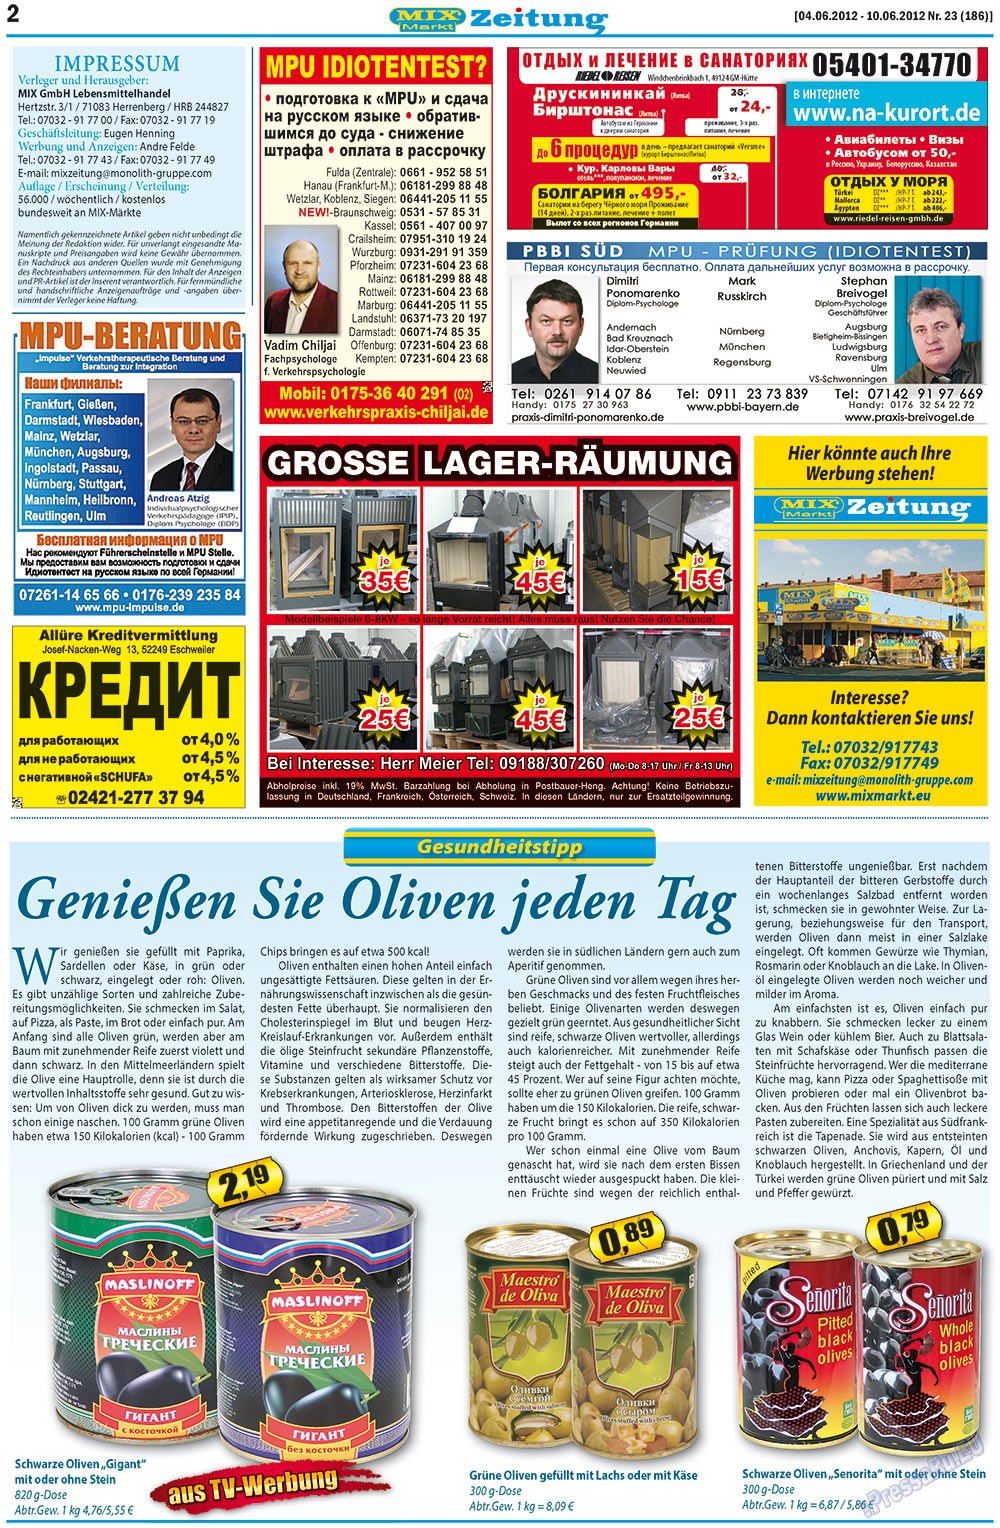 MIX-Markt Zeitung (газета). 2012 год, номер 23, стр. 2